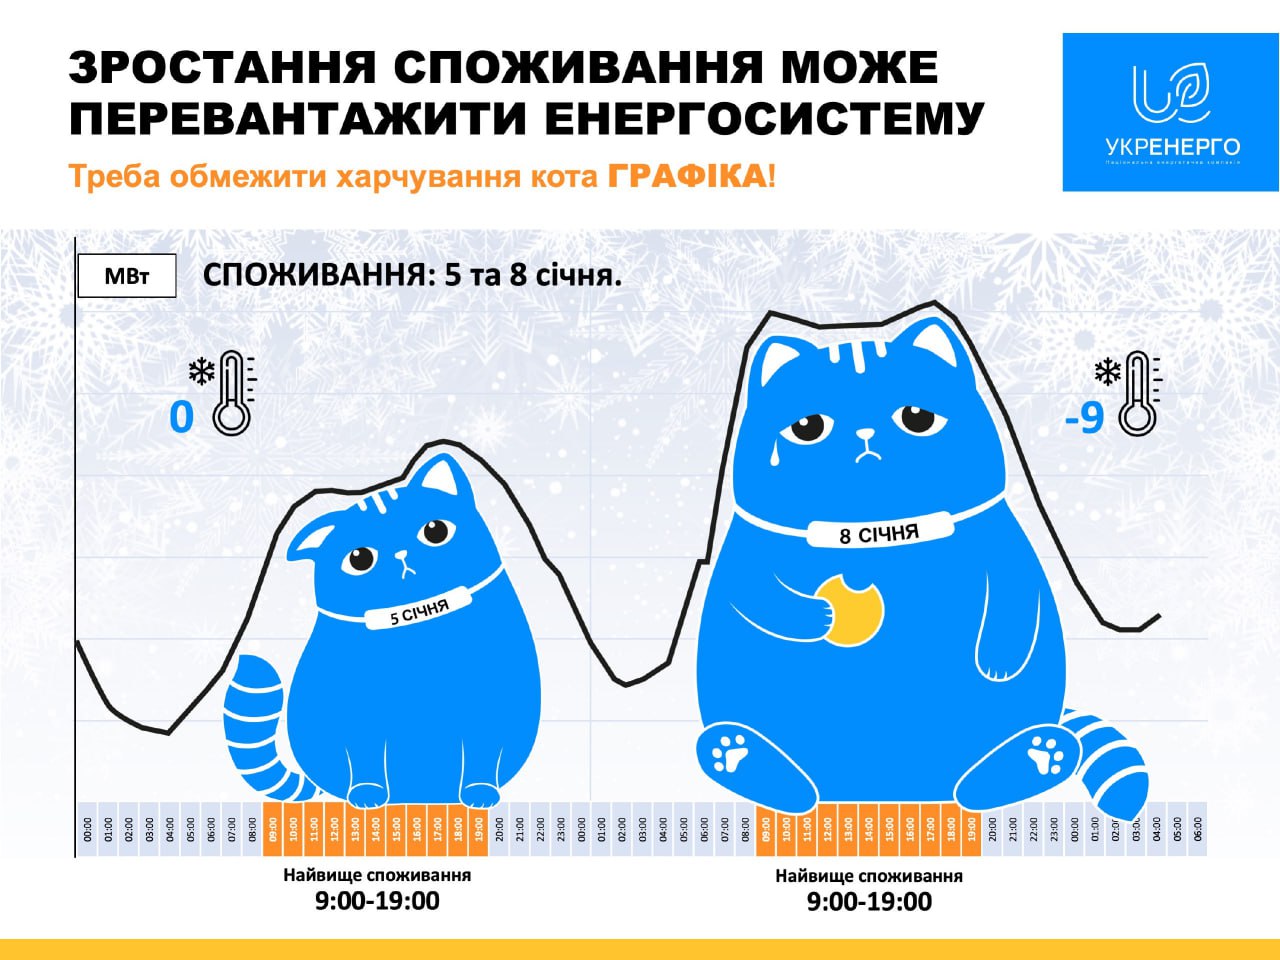 Споживання електроенергії в Україні значно зросло